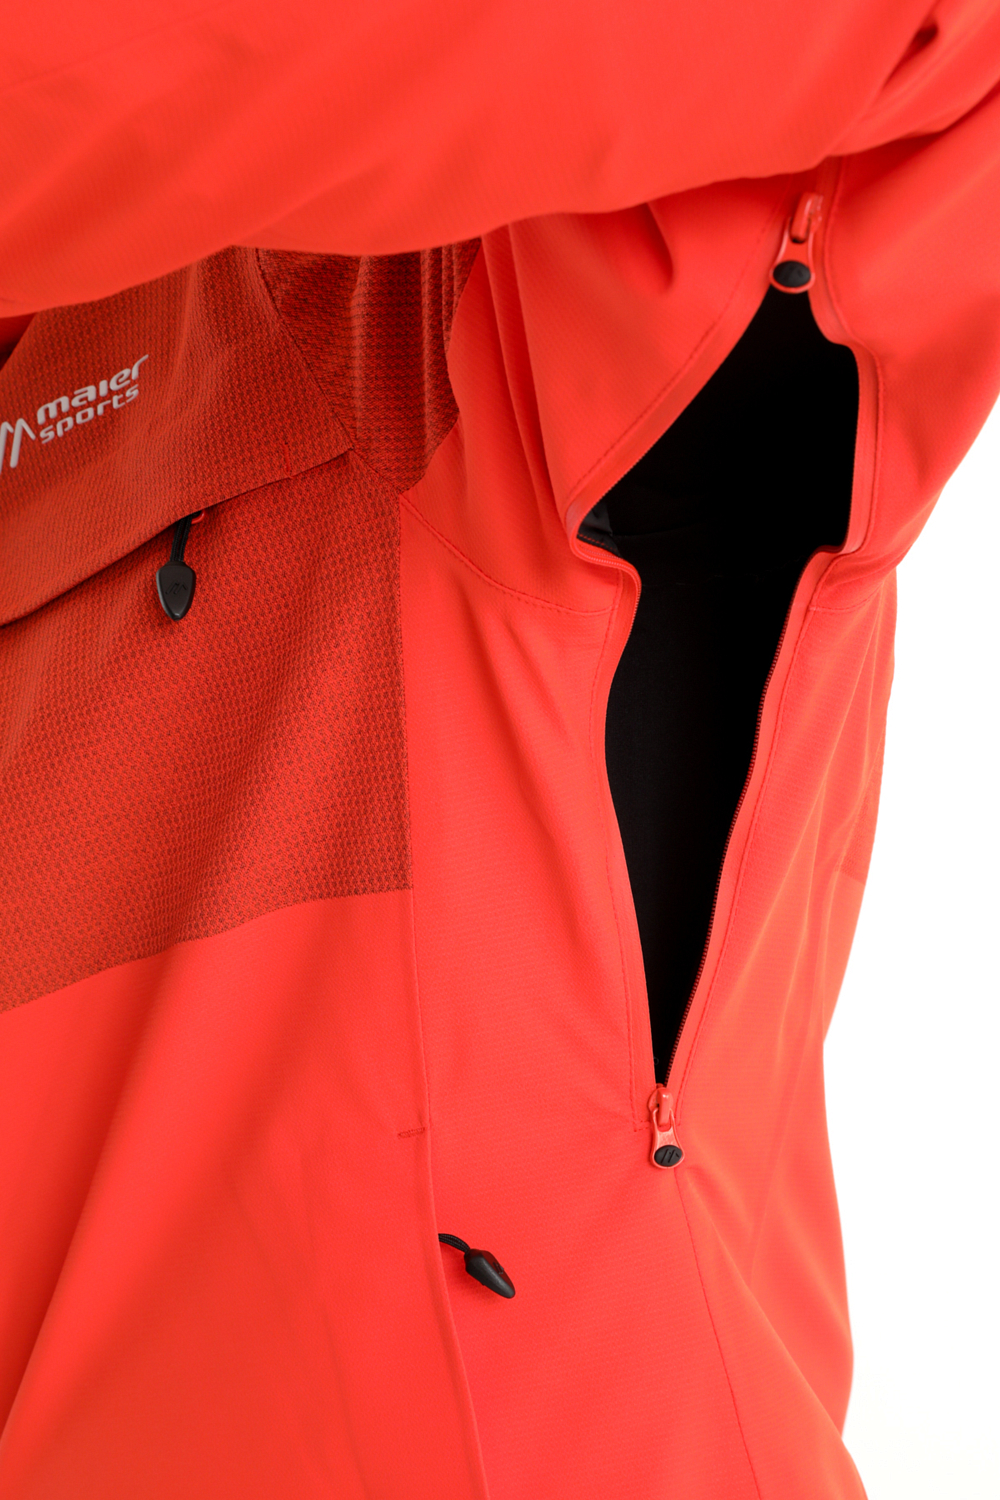 Куртка горнолыжная Maier Sports Dammkar Pure Оранжевый/красный